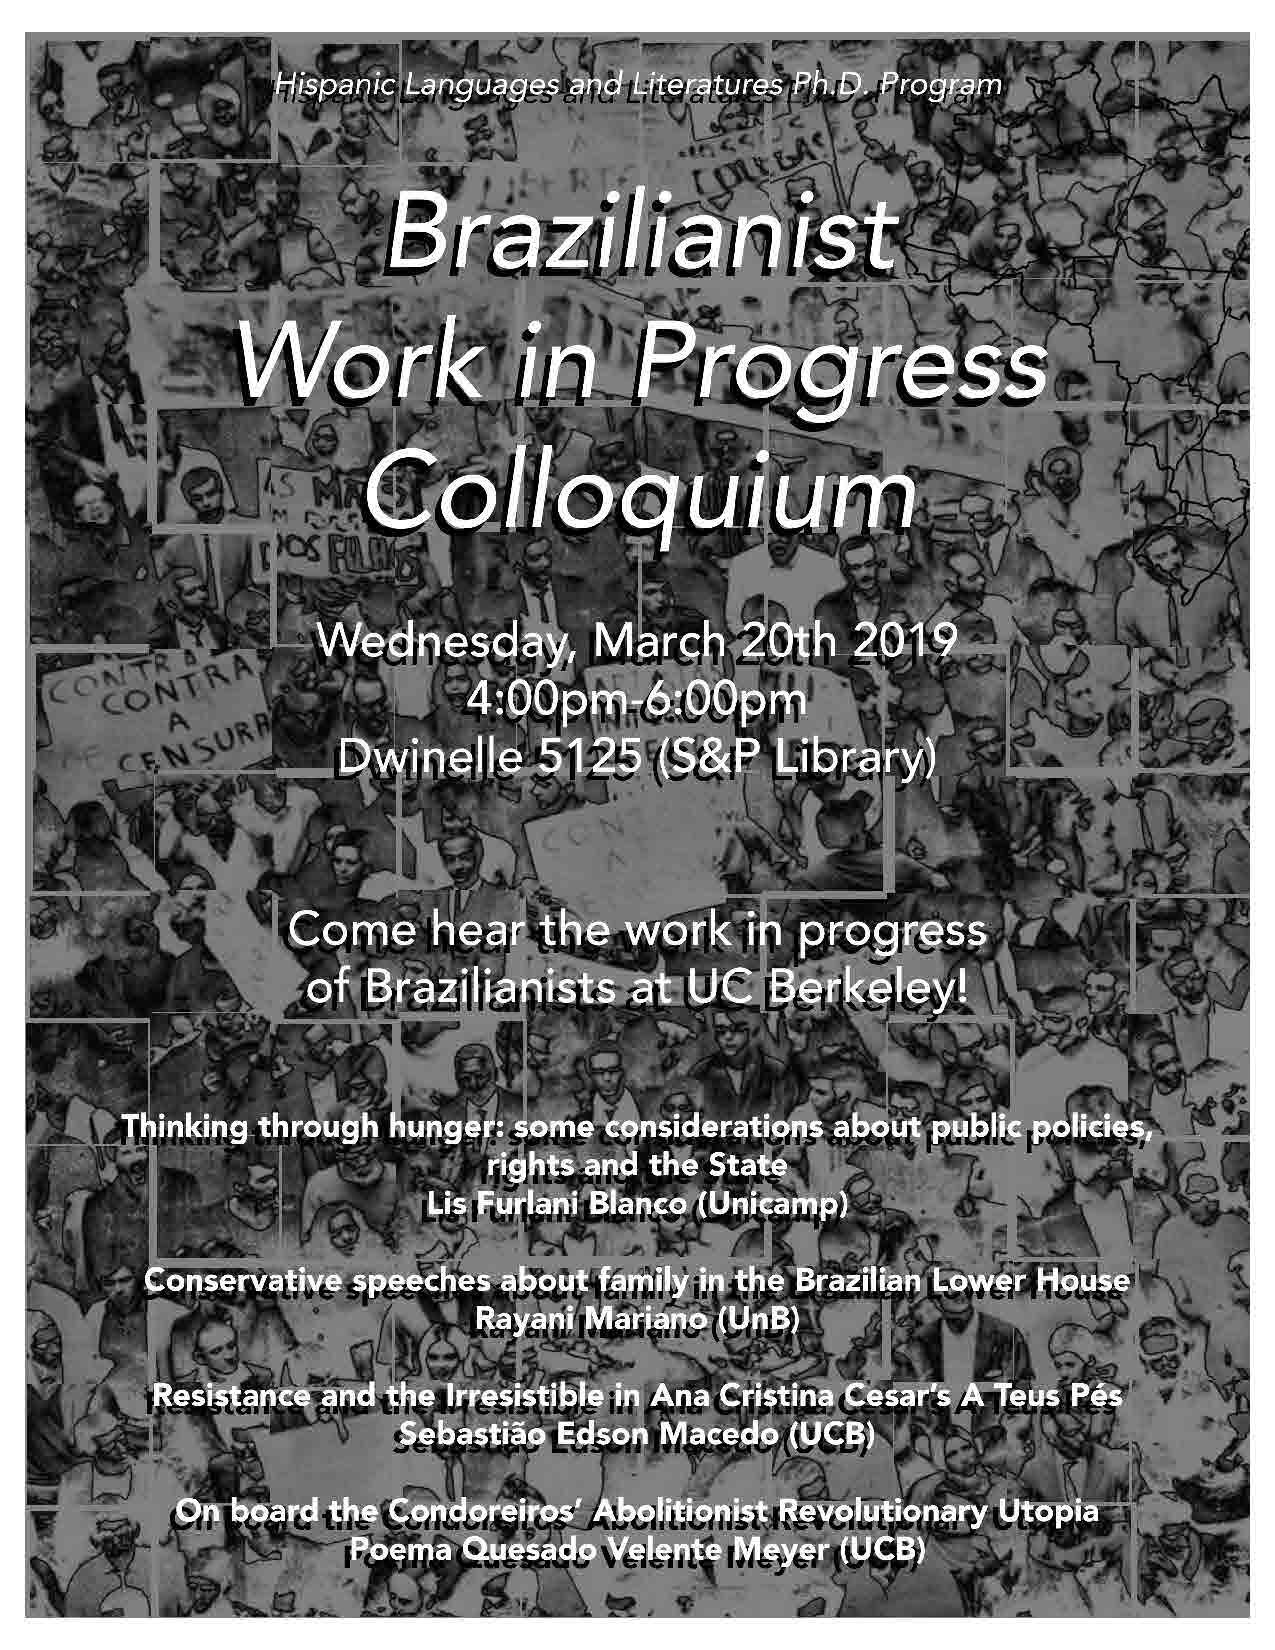 Brazilianist Work in Progress Colloquium